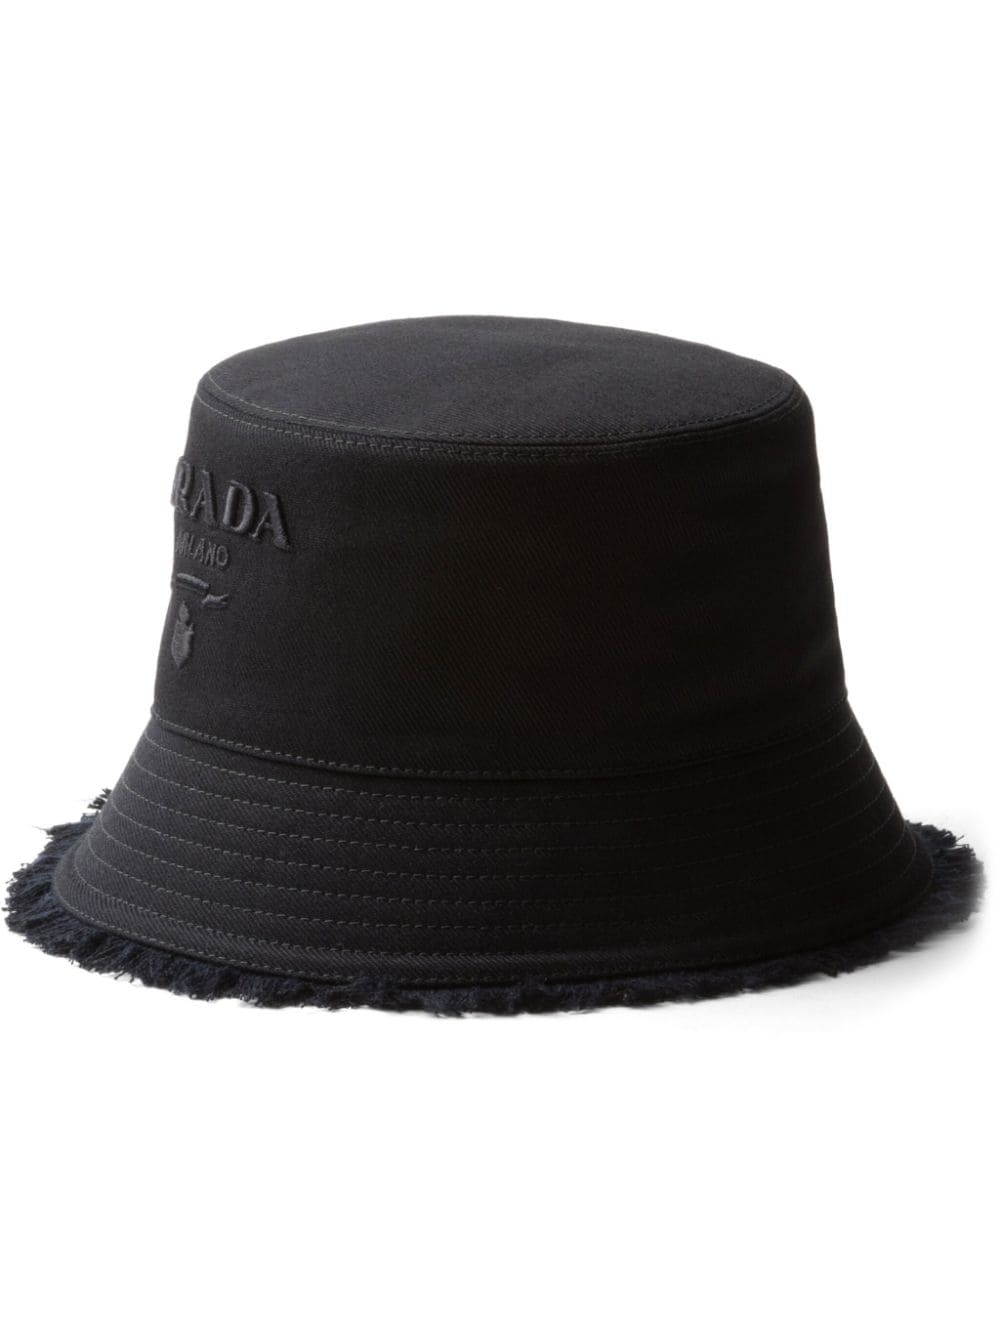 Prada logo-embroidered bucket hat - Schwarz von Prada